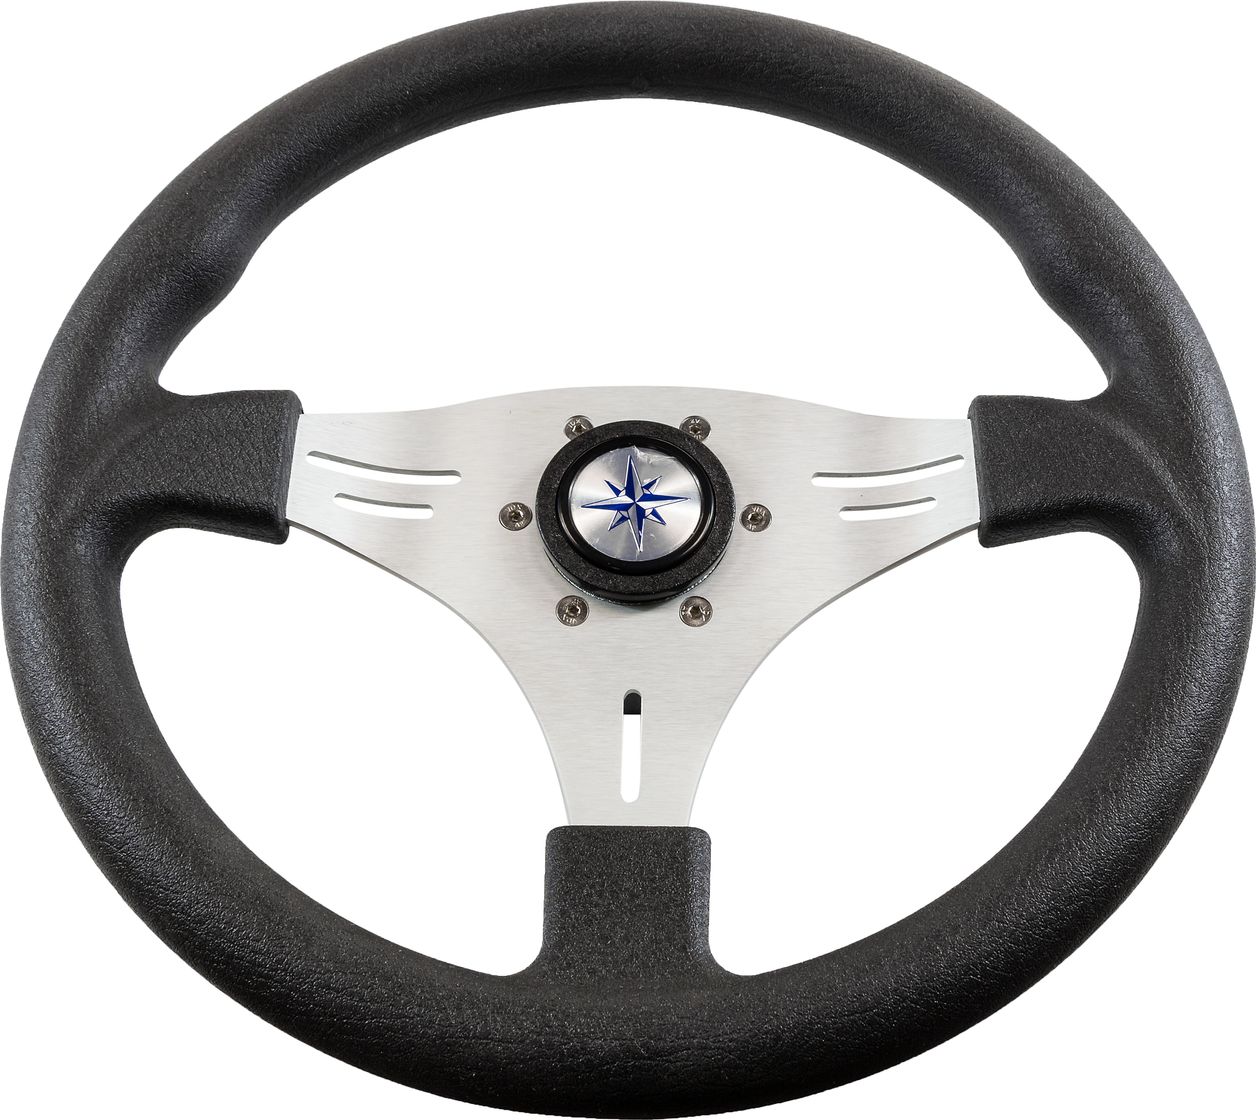 Рулевое колесо MANTA обод черный, спицы серебряные д. 355 мм VN70551-01 рулевое колесо evolution обод с серебристыми вставками more 10016467